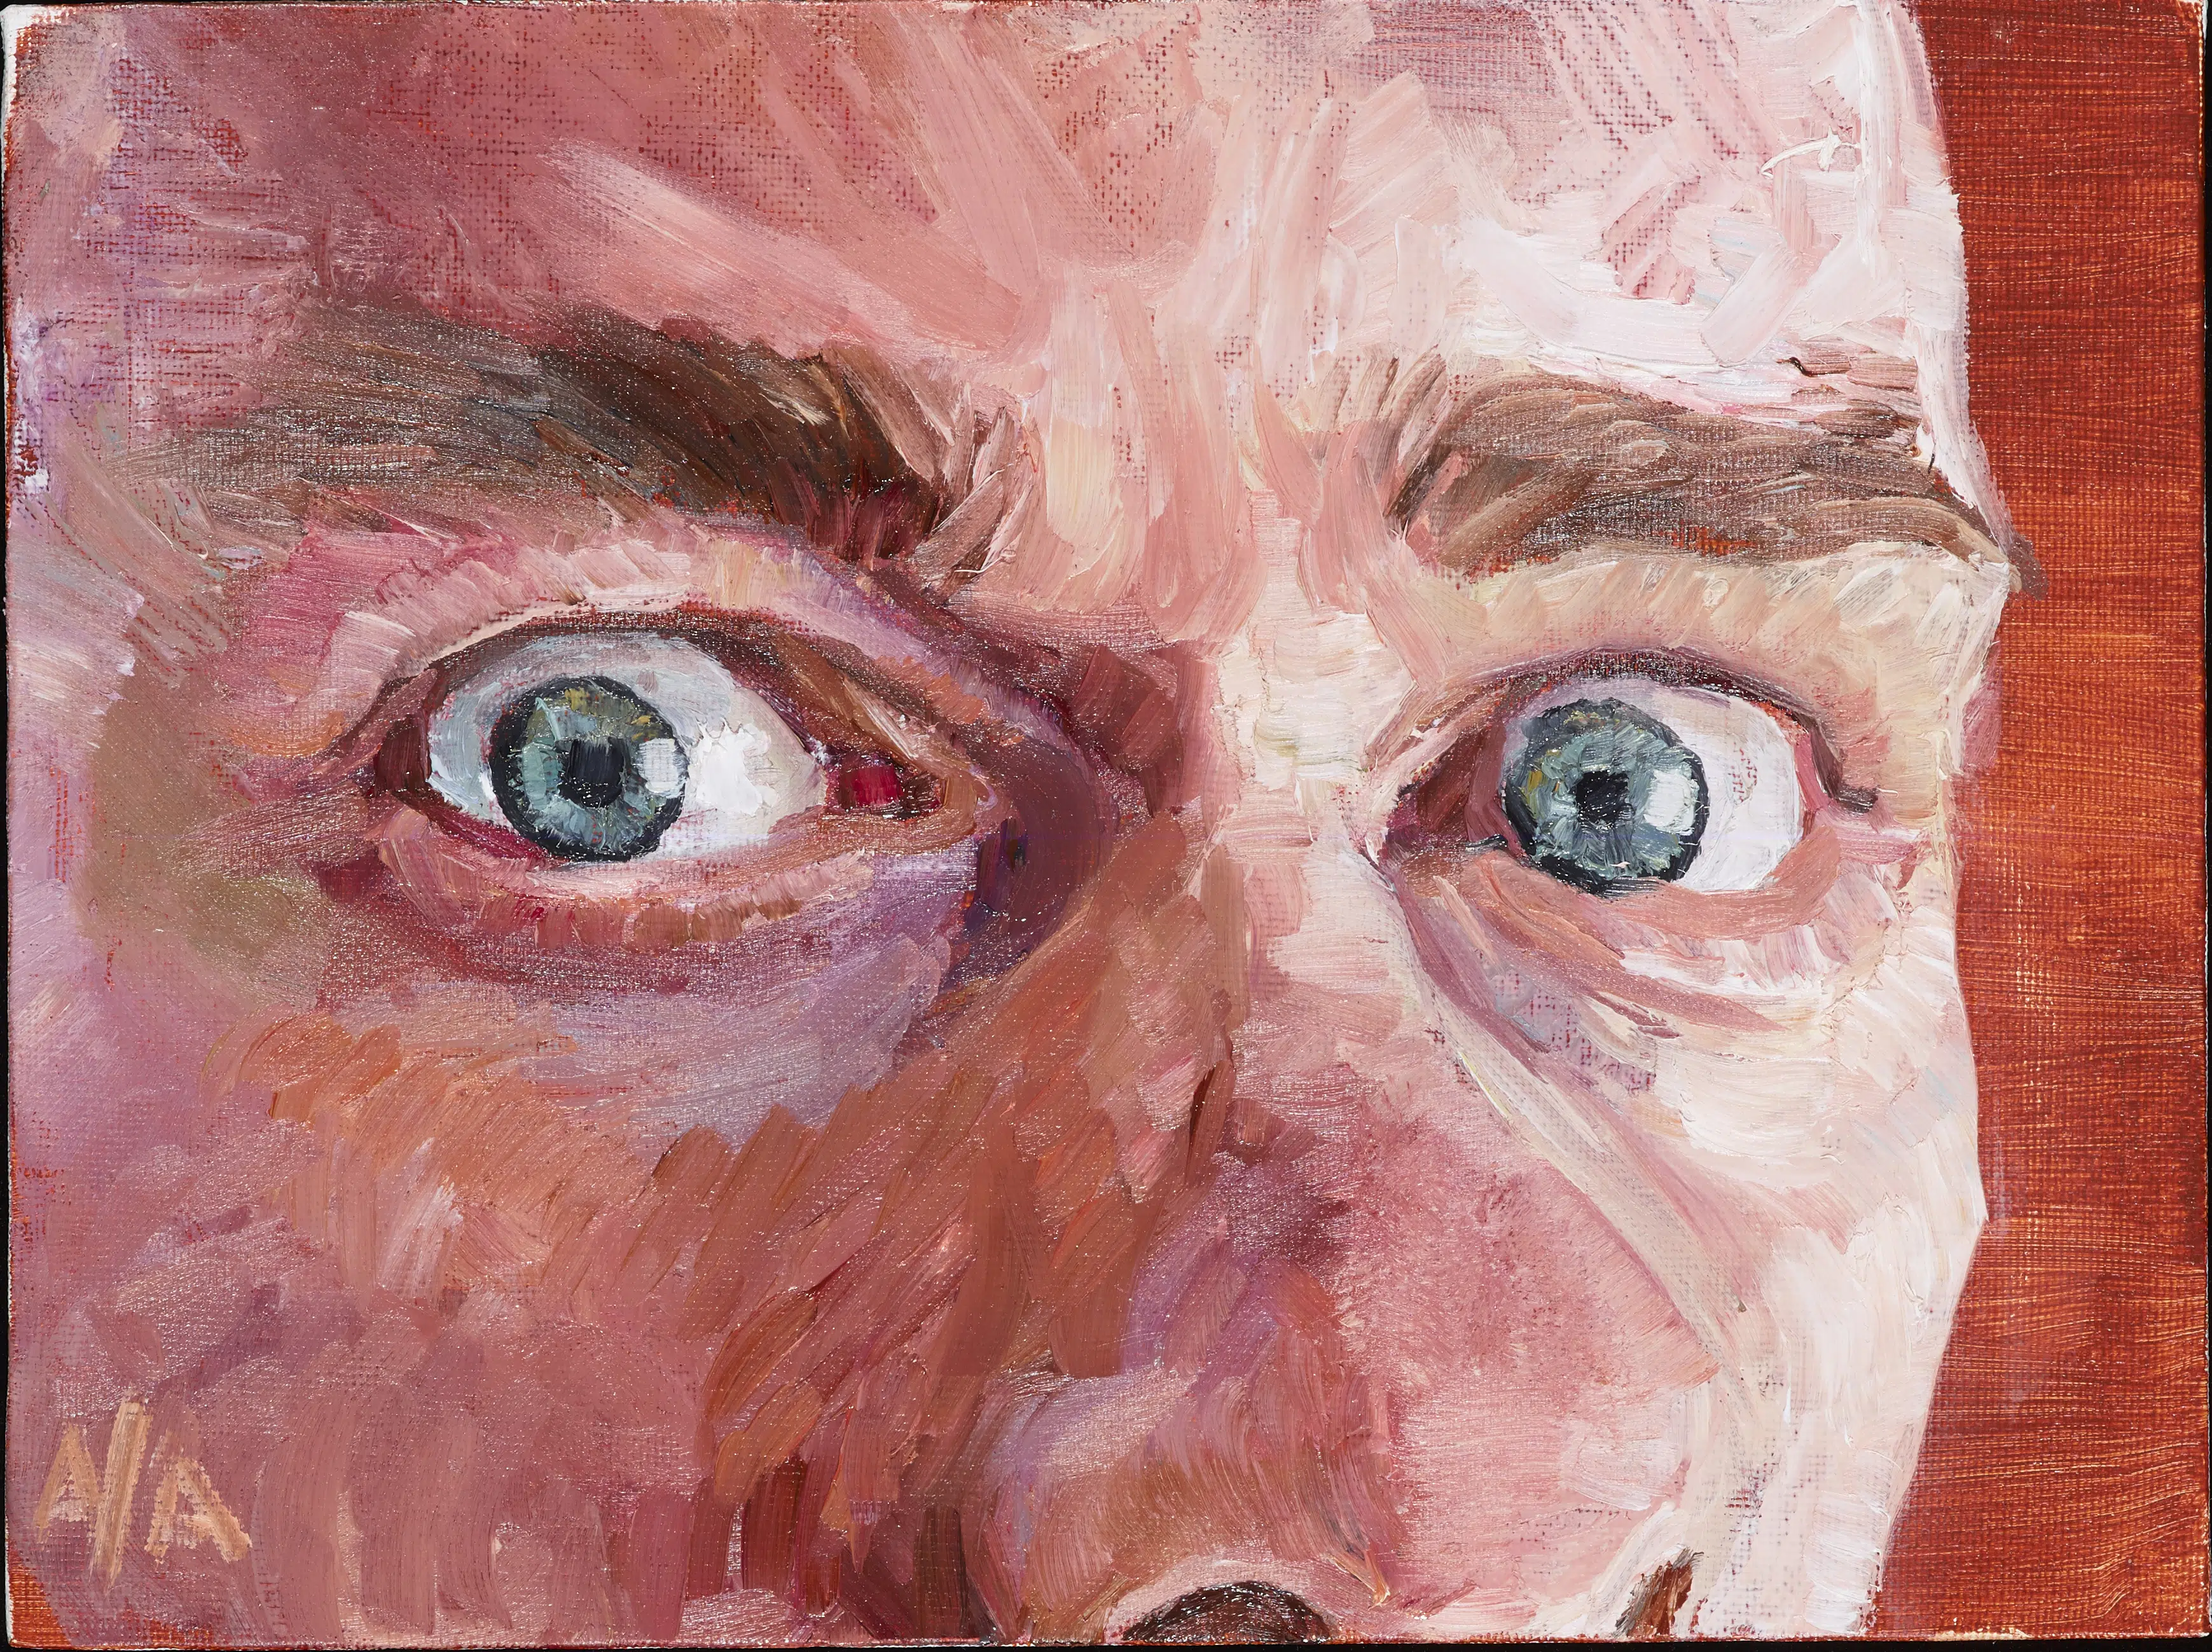 Blik van een zelfportret 2022 18cm x 24cm olieverf op canvaspaneel scaled